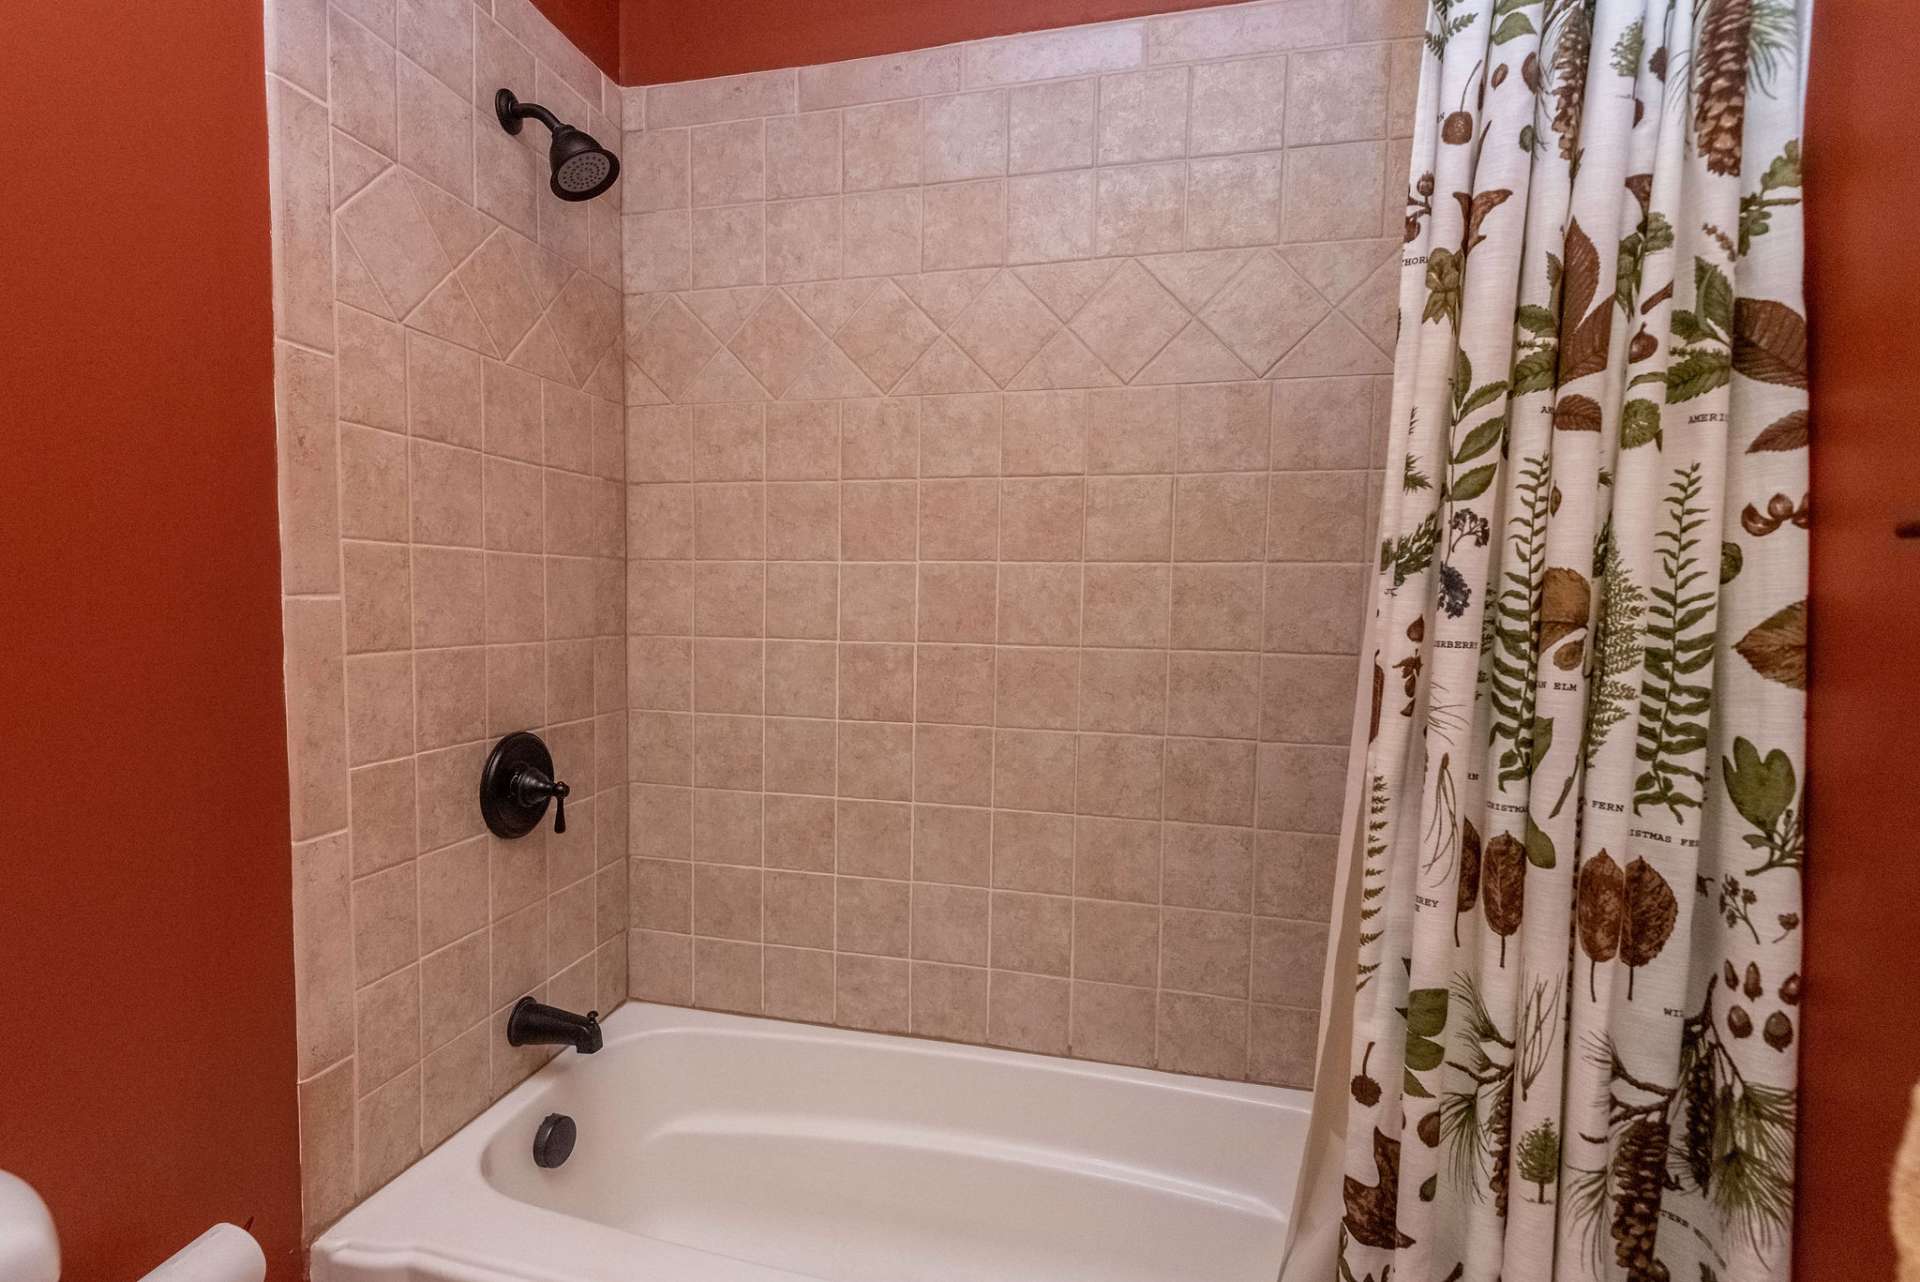 Upper level guest bath features a tile surround shower.